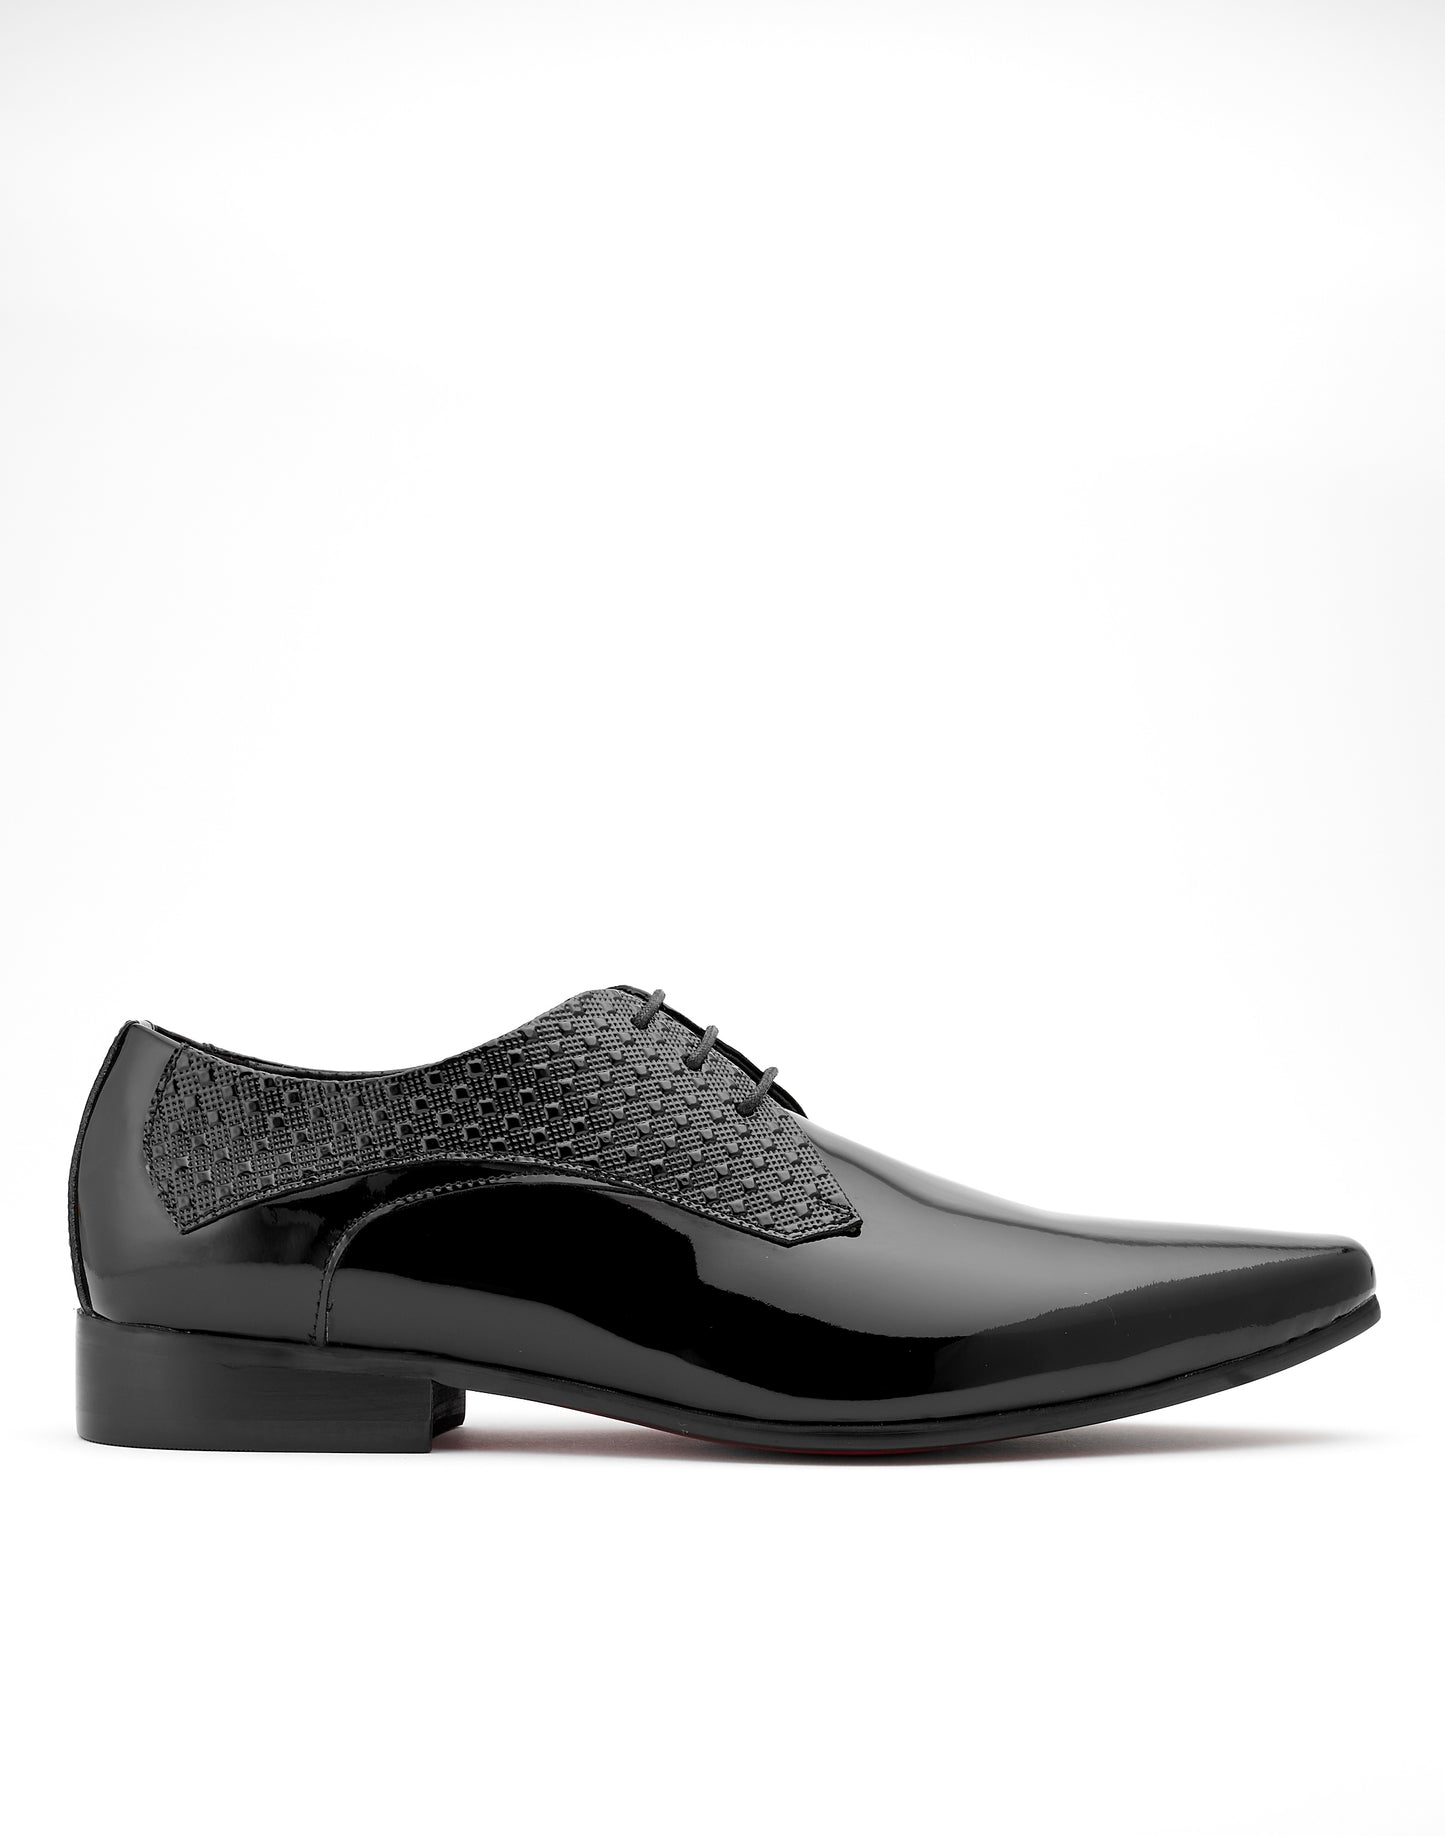 Marcello Shoe Patent Black